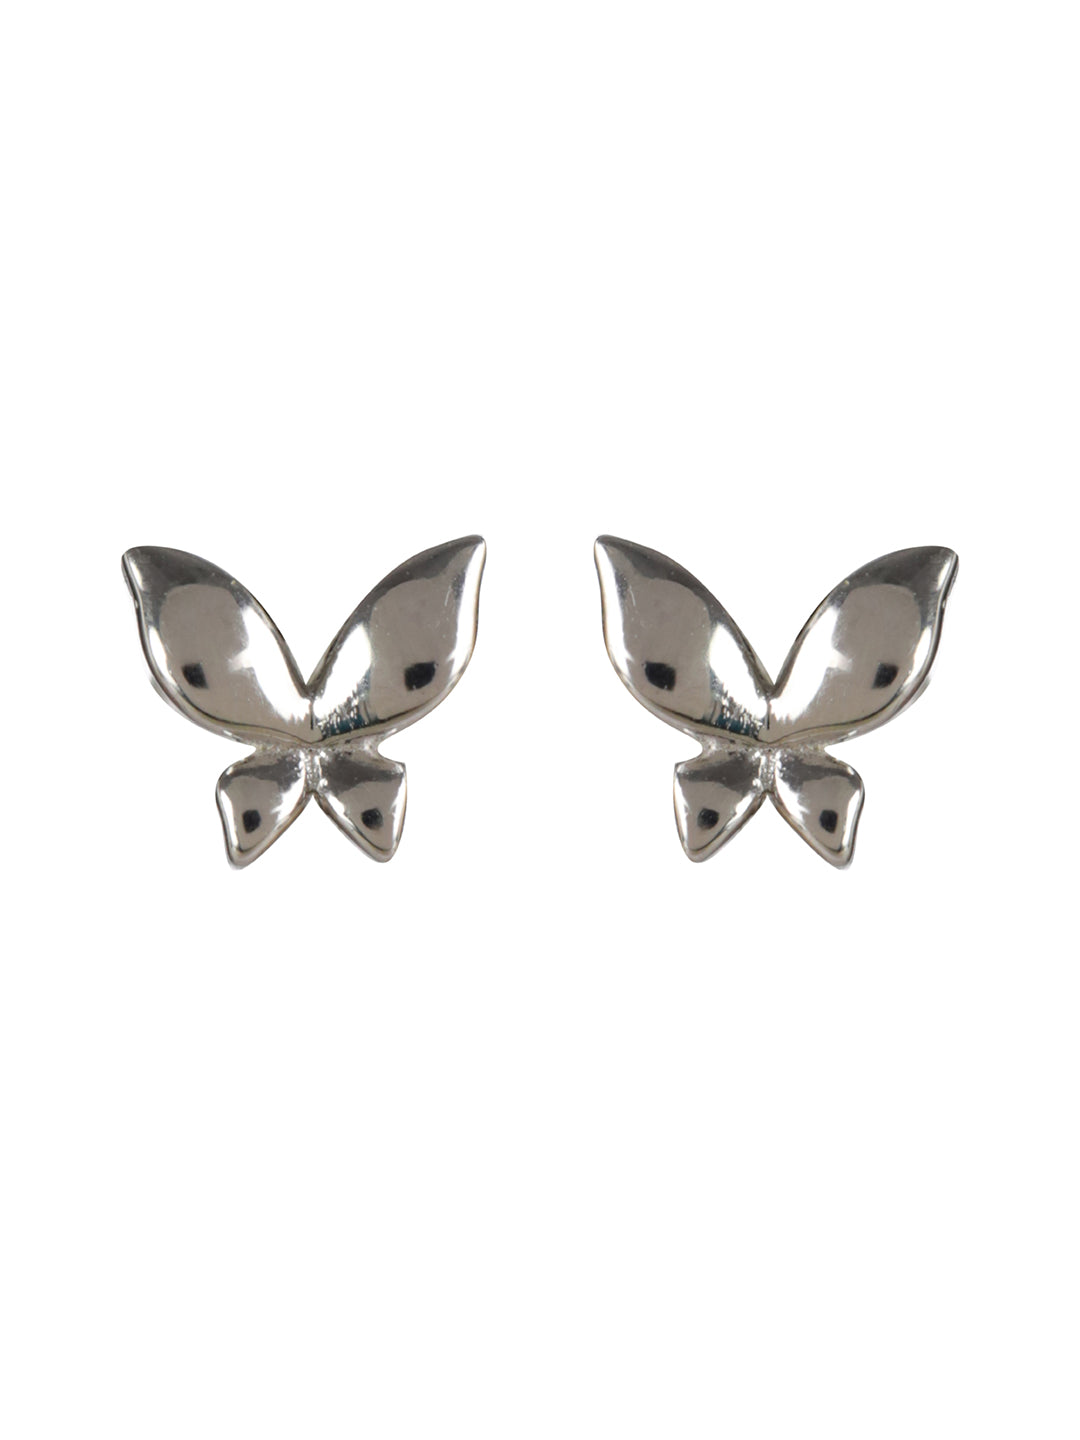 Sheer by Priyaasi Tiny Butterflies Sterling Silver Earrings Set of 3